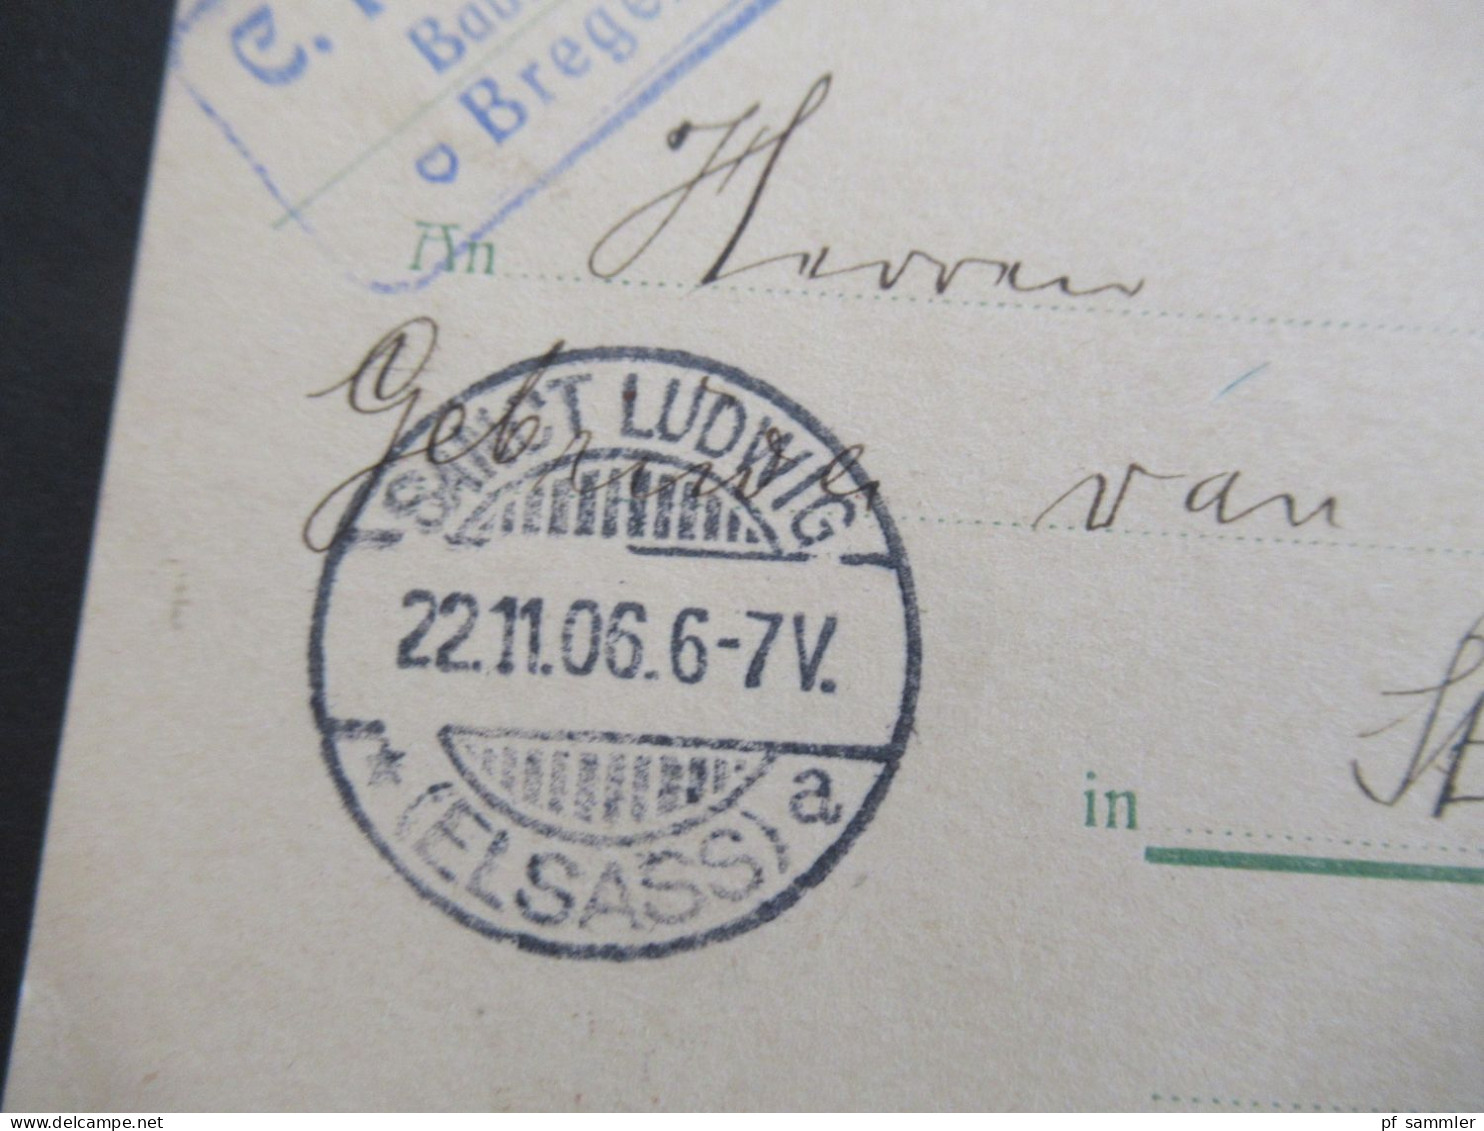 Österreich 1906 GA Auslandsverwendung Bregenz Und Ank. Stp. Sanct Ludwig Elsass Abs. C. Rhomberg Baumeister Bregenz - Cartoline